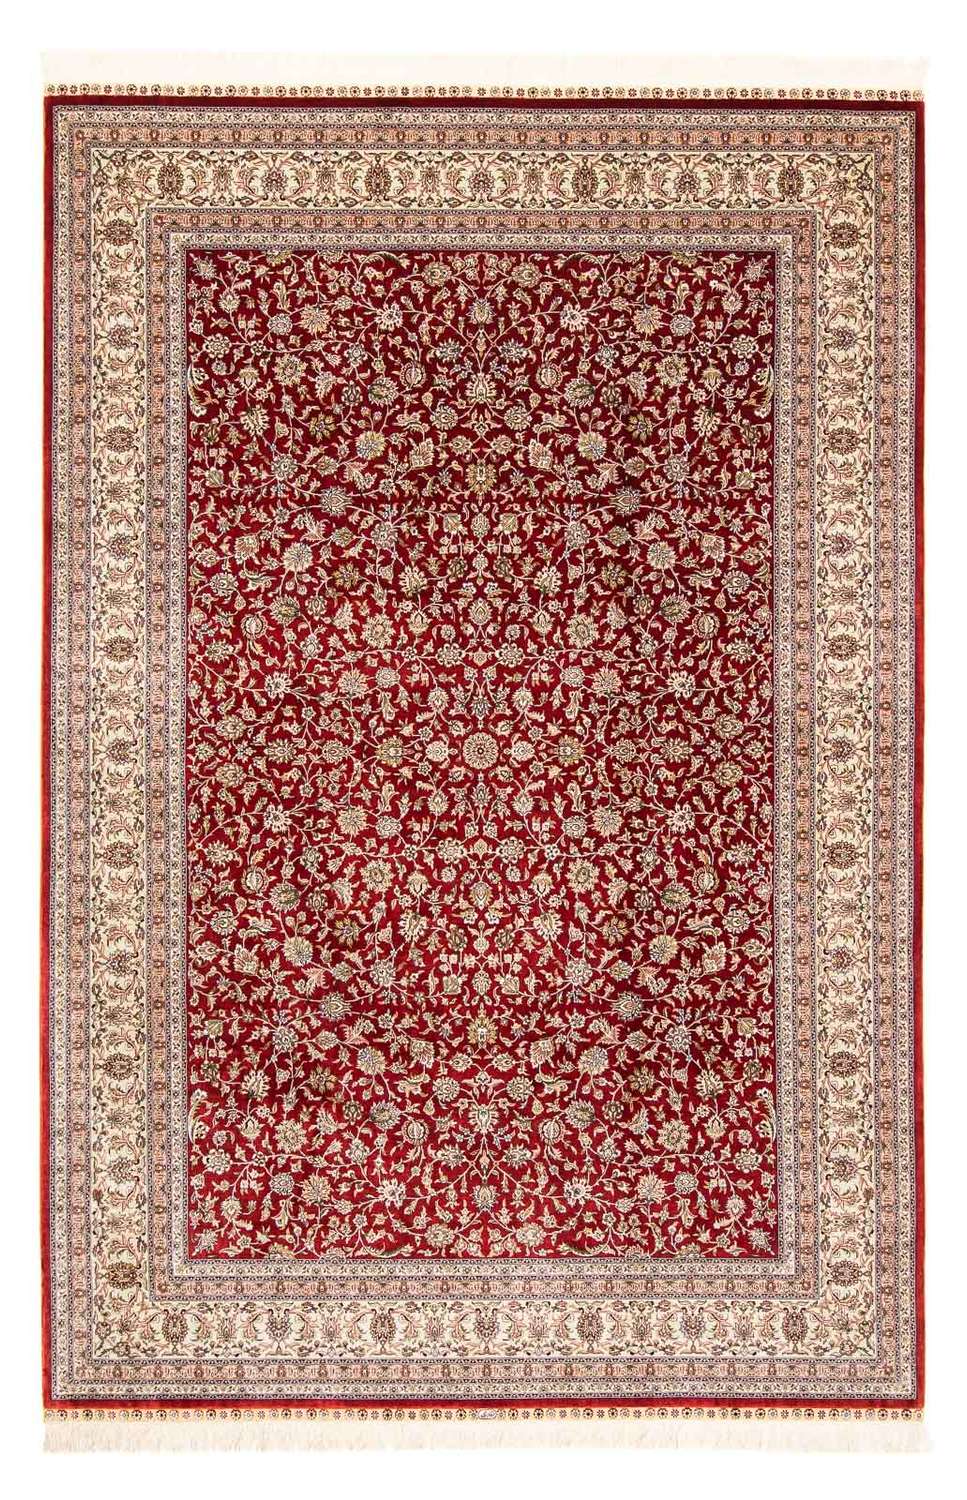 Orientalny dywan - Hereke - 276 x 185 cm - ciemna czerwień